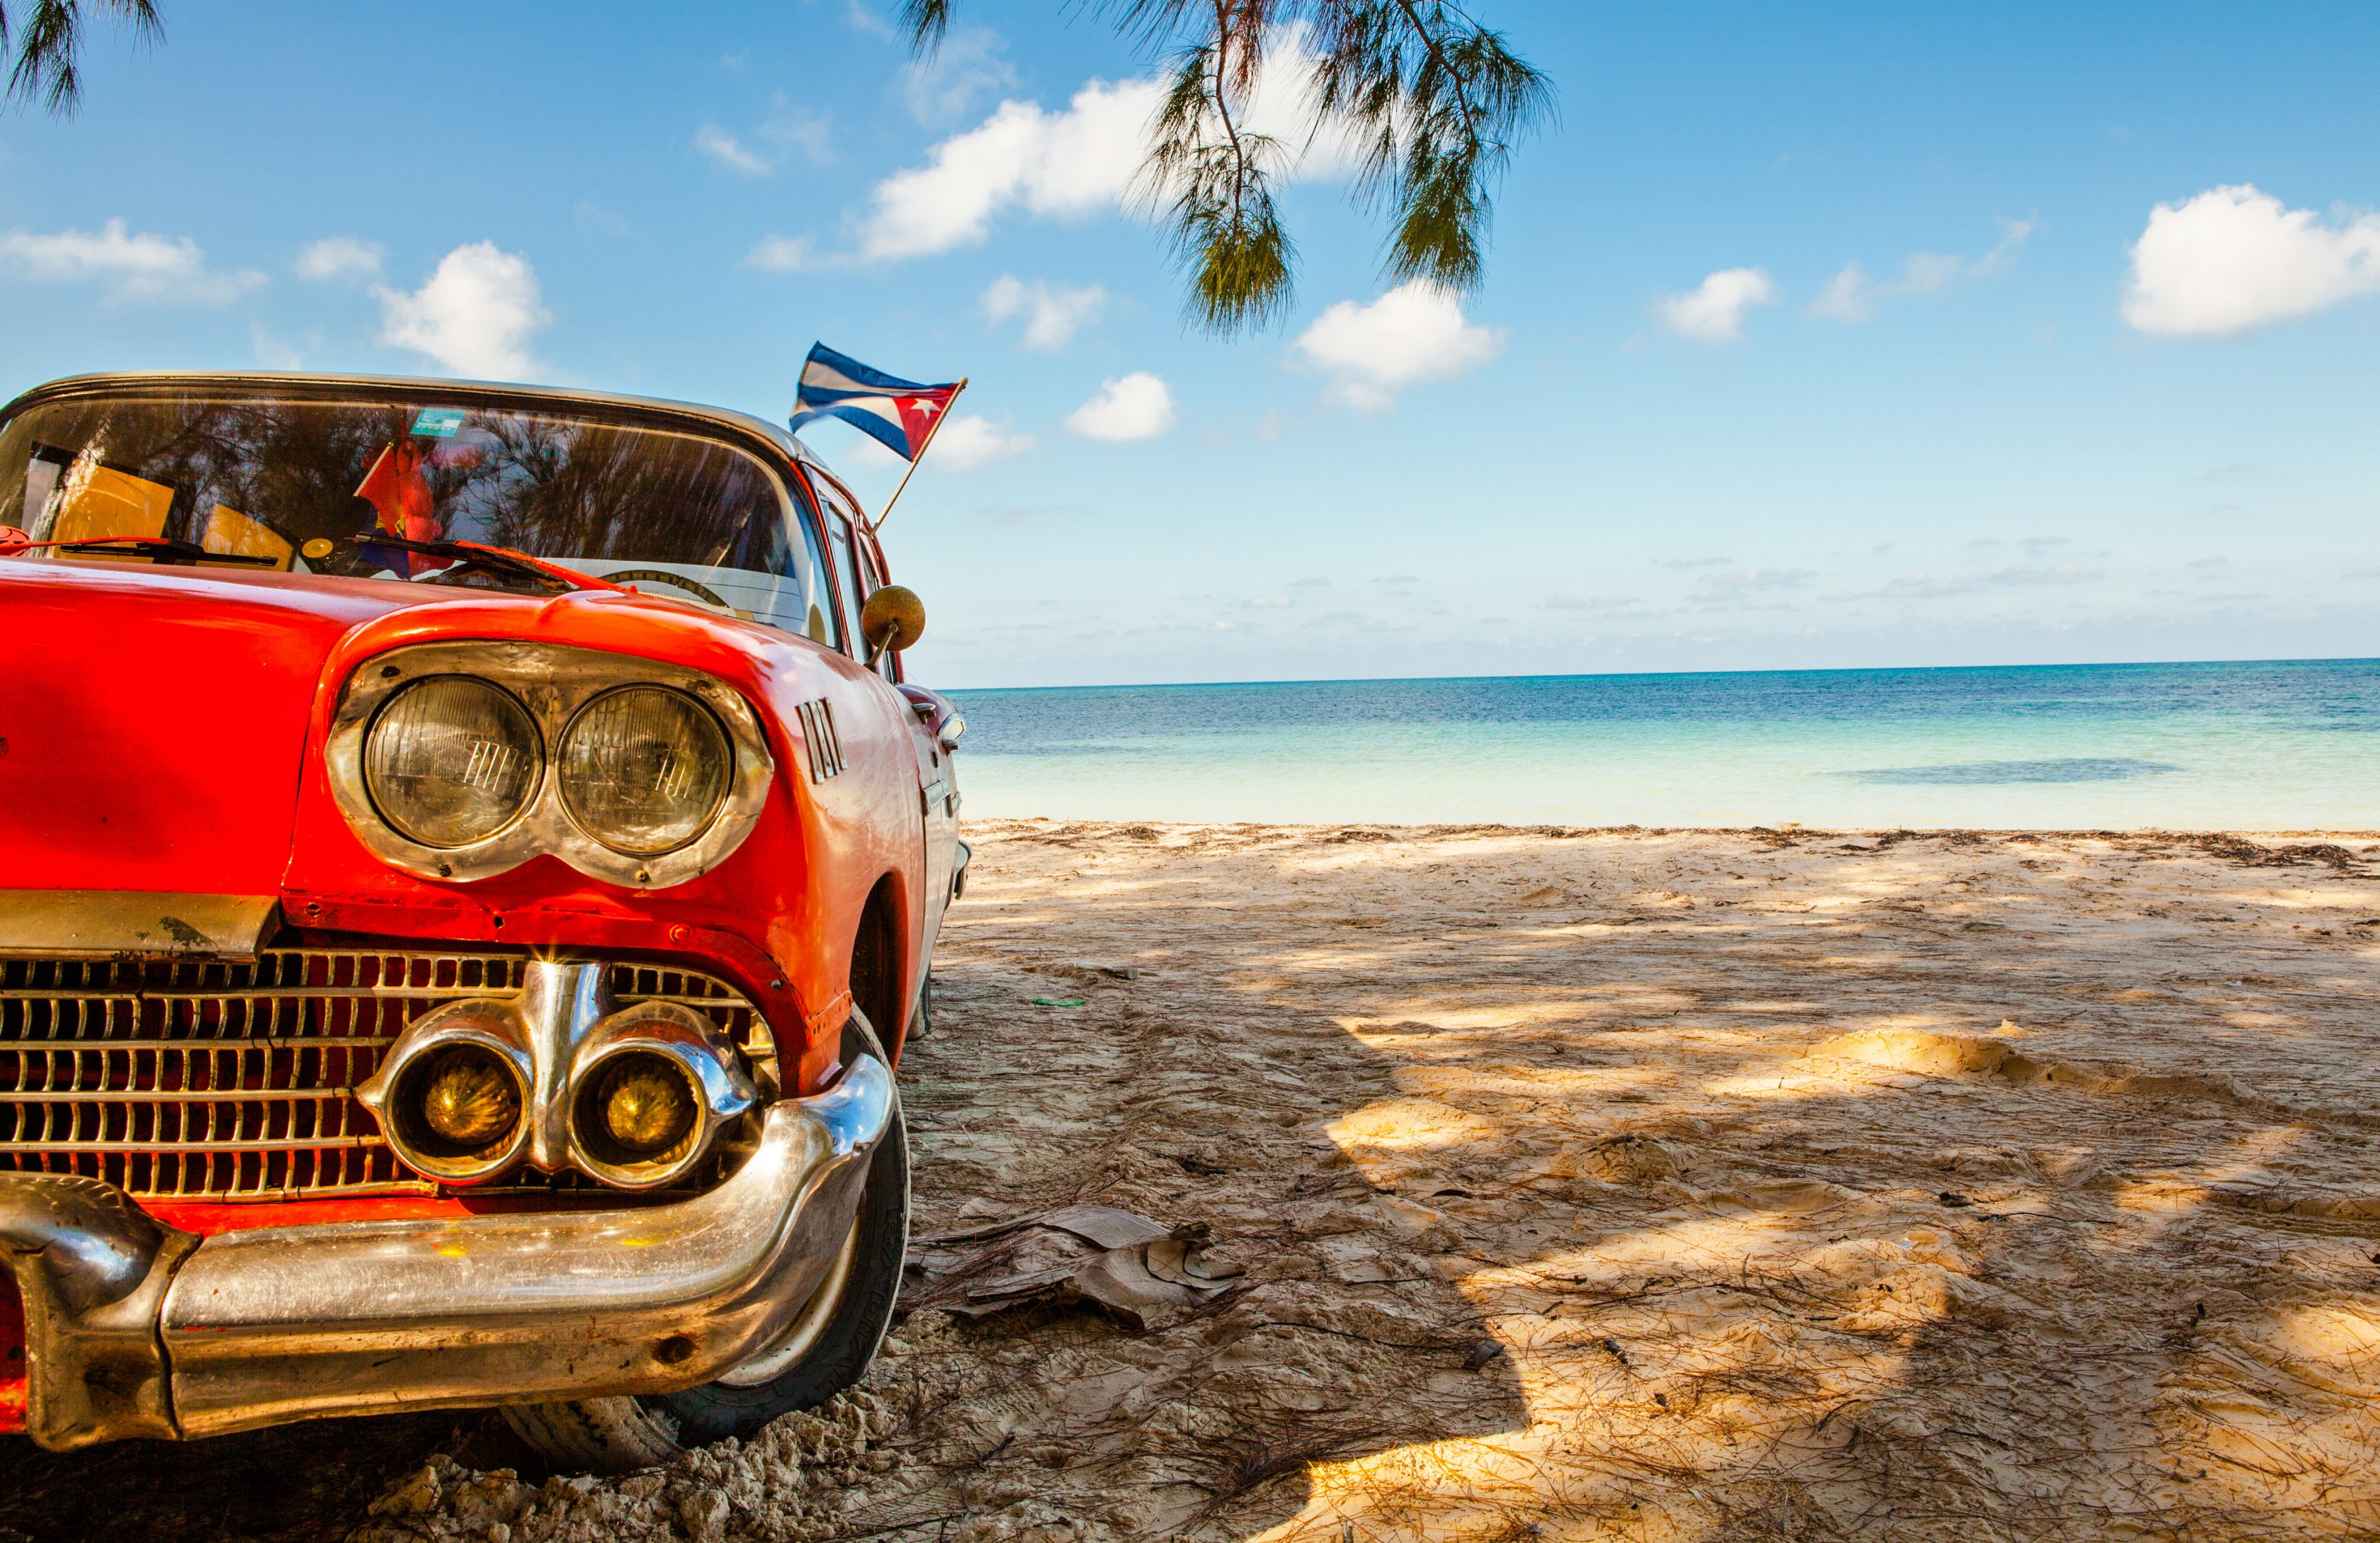 Ένα κουβανέζικο αμάξι στην παραλία με τη σημαία της Κούβας πάνω του